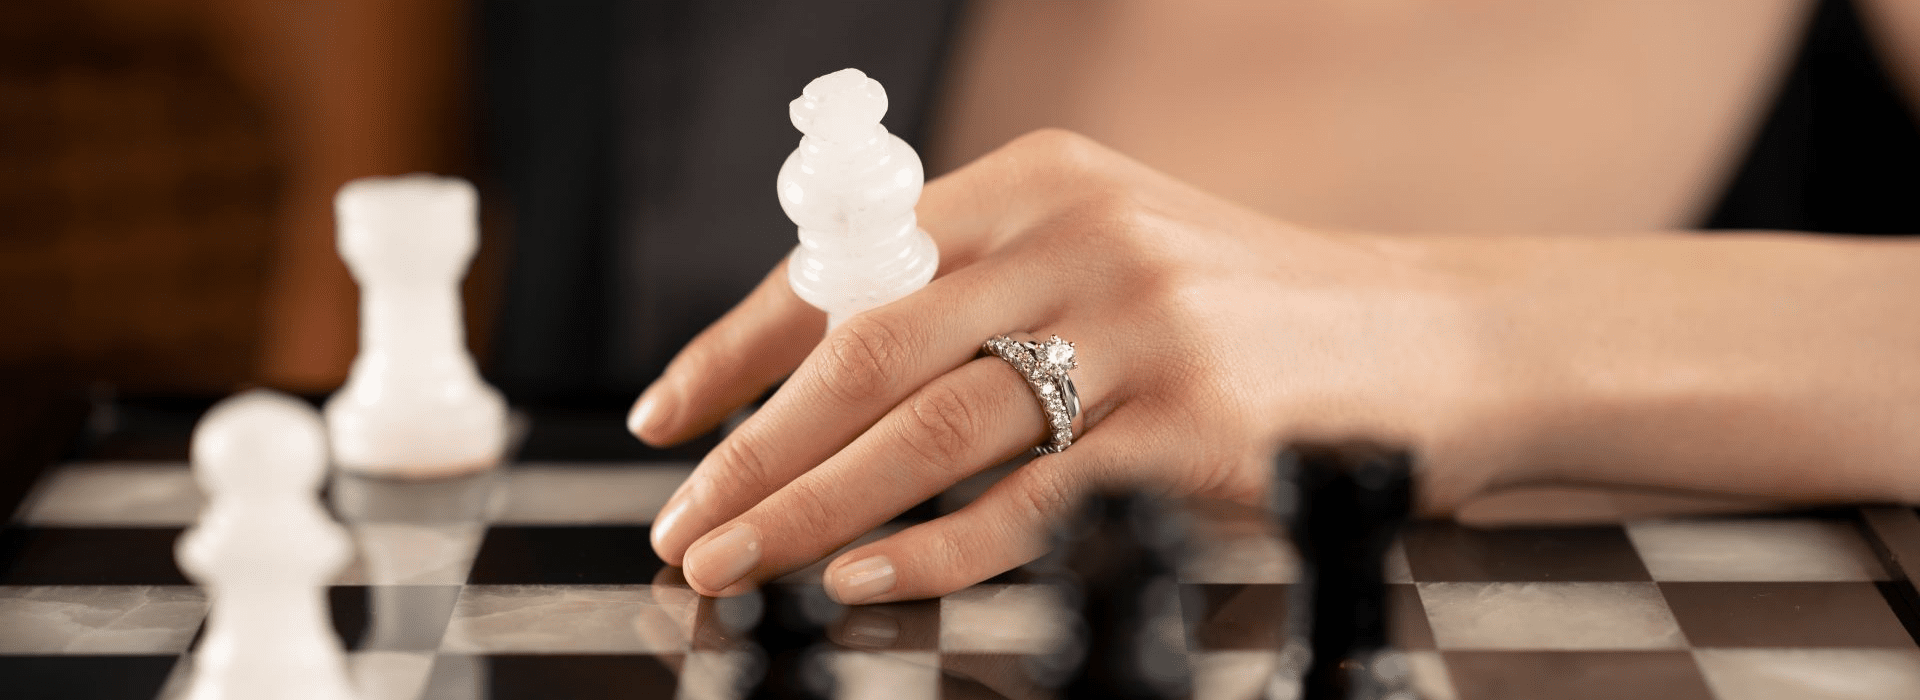 Prominenter Ring an einer Frauenhand